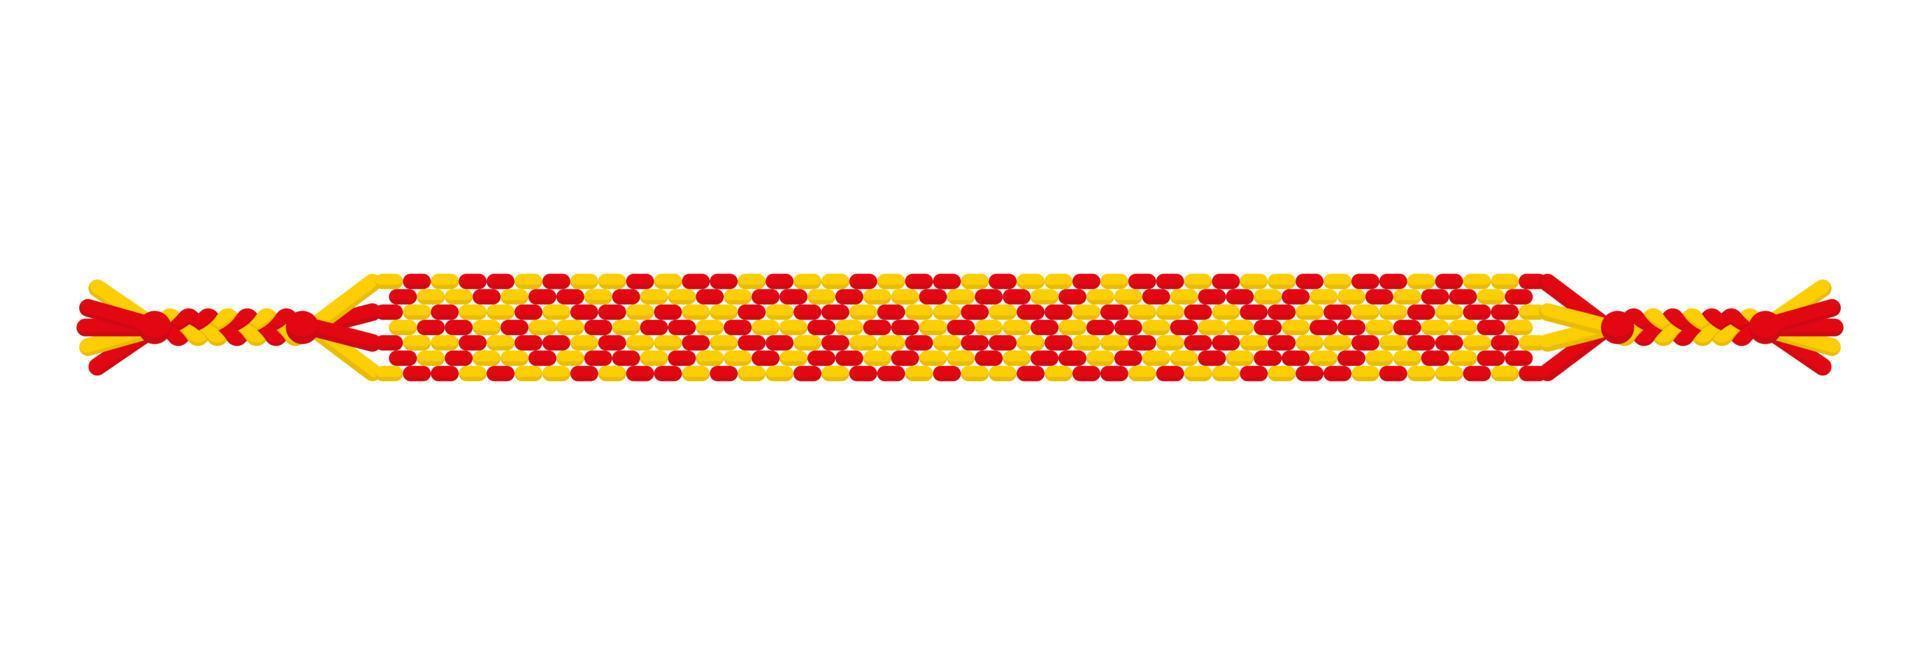 vector veelkleurige handgemaakte hippie vriendschap armband van rode en gele draden.